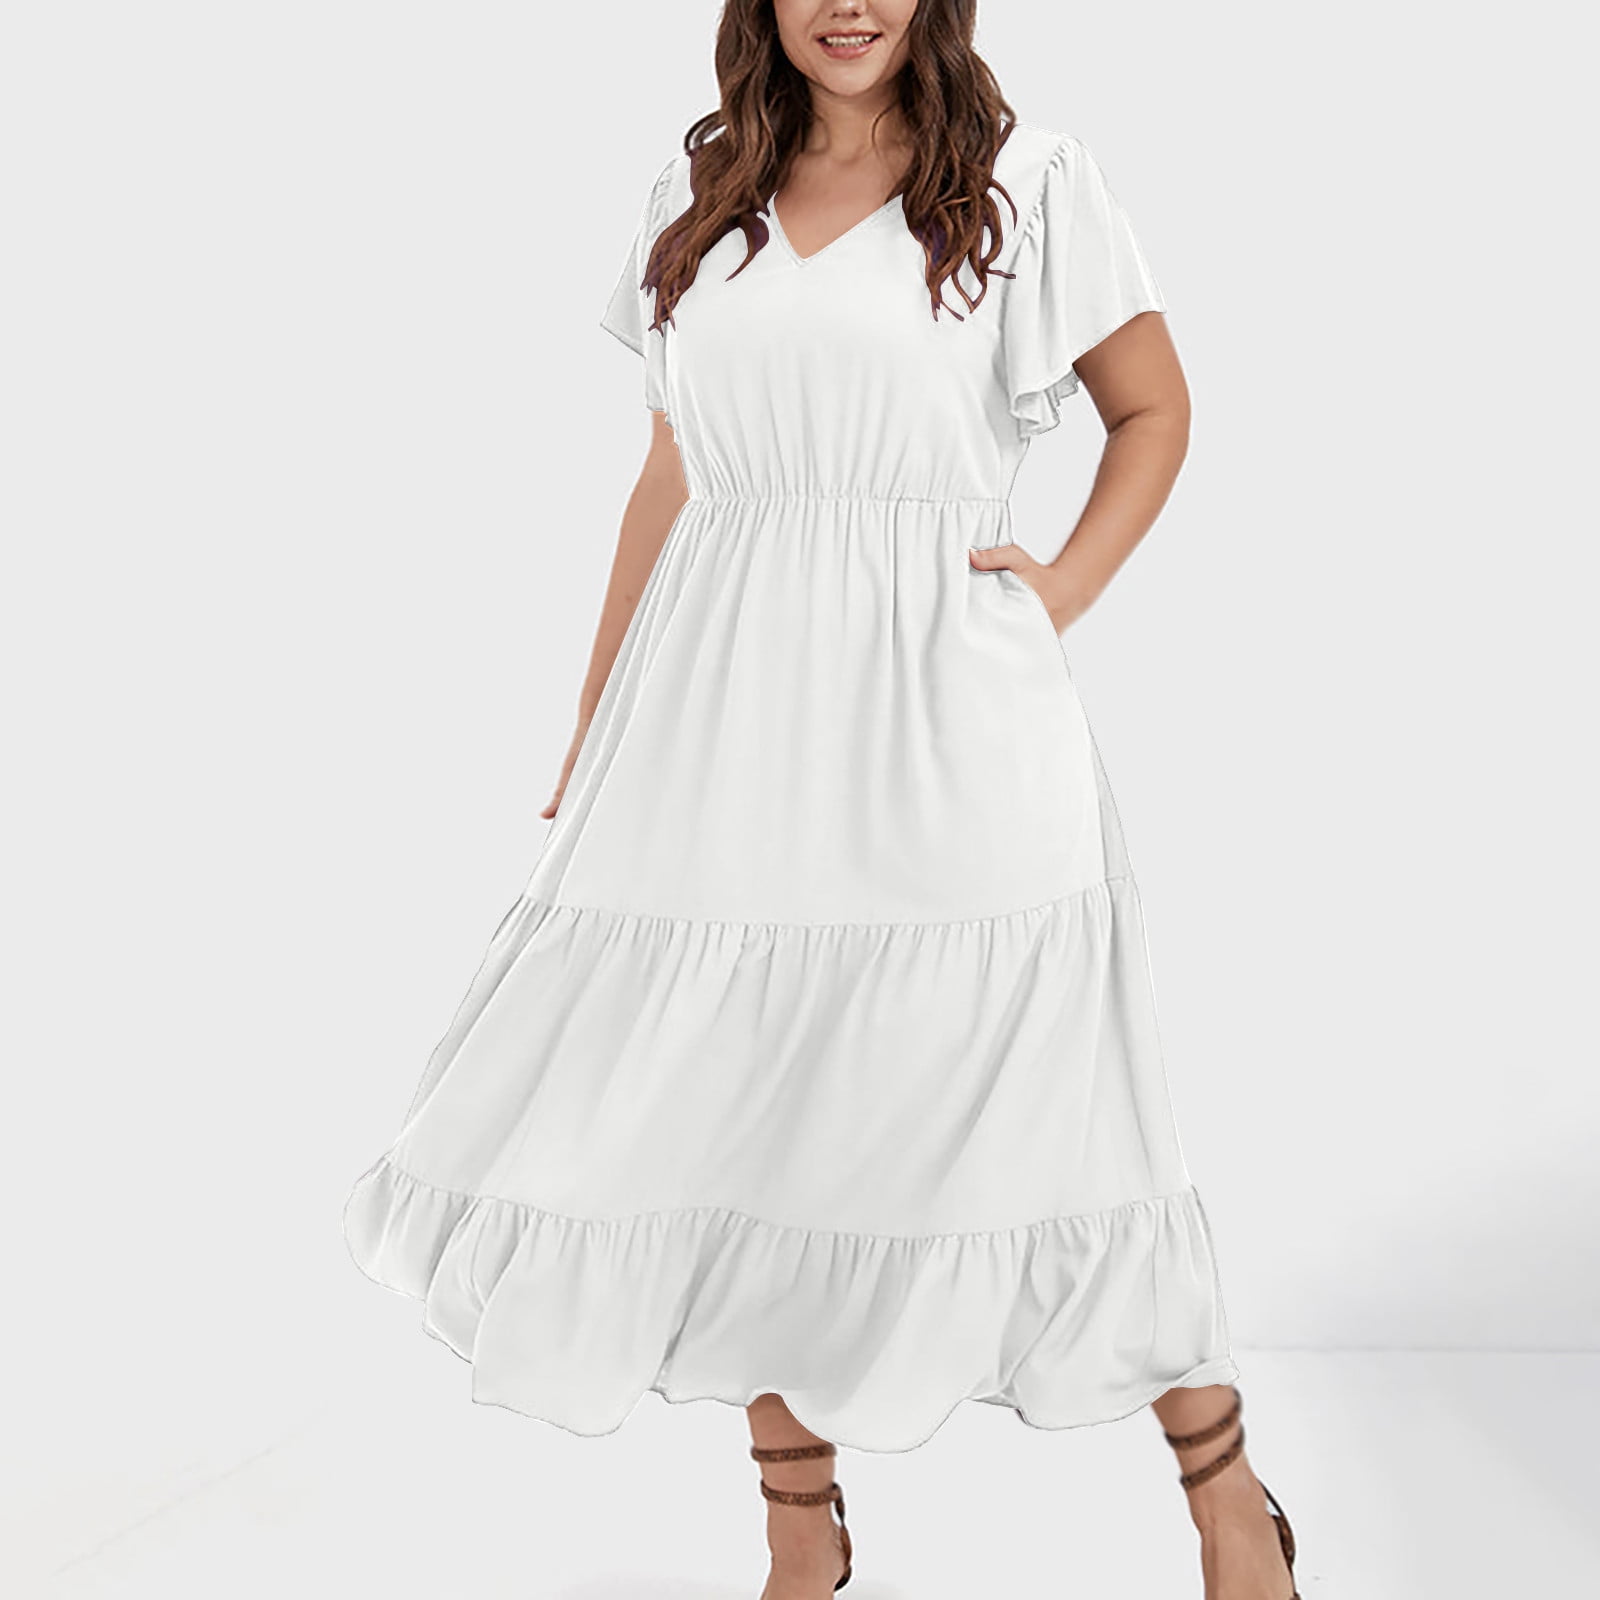 white church dresses